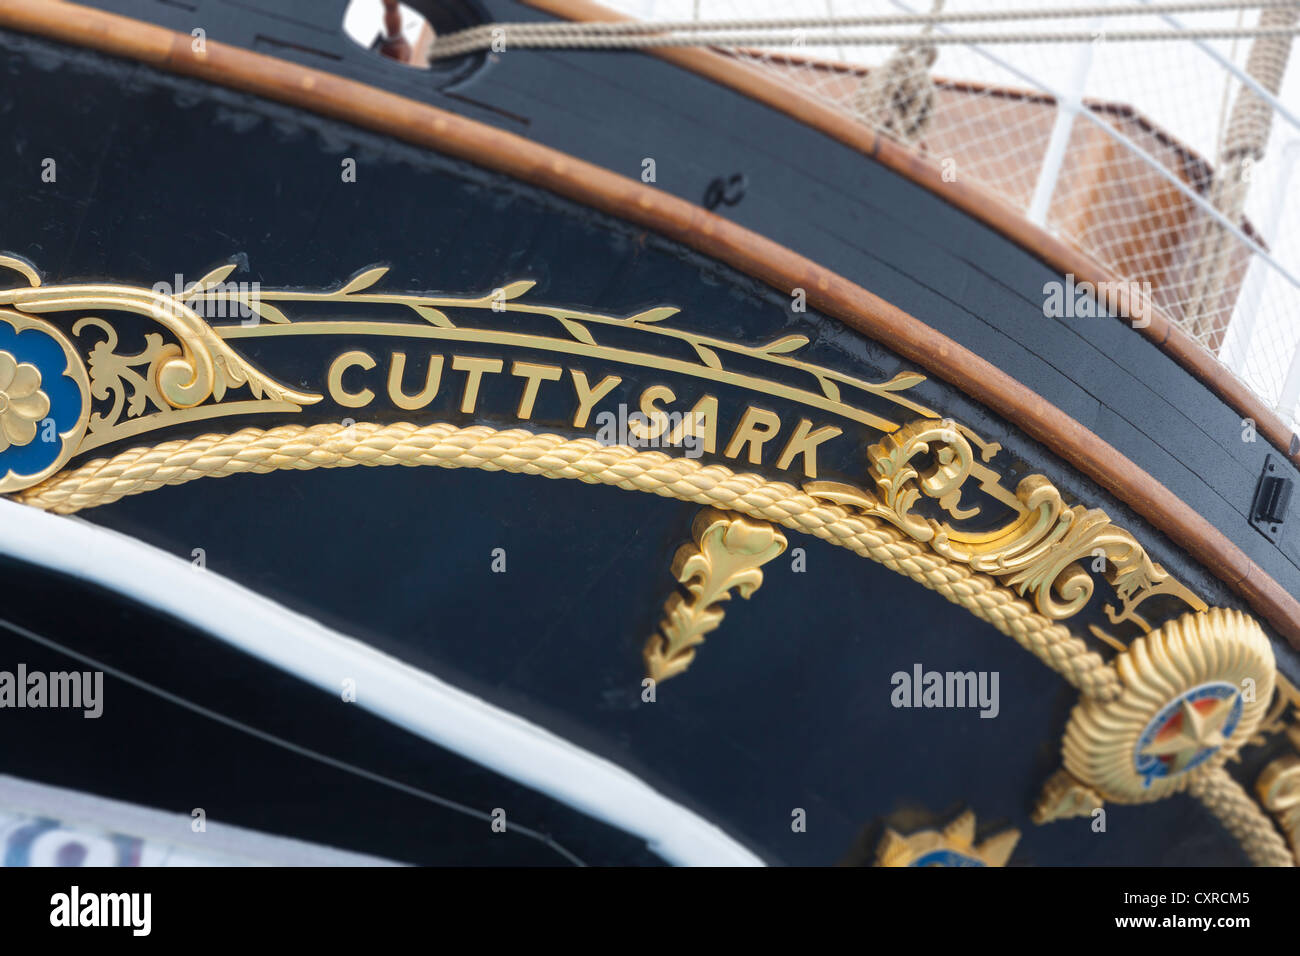 Le Cutty Sark clipper thé entièrement restauré et rénové à partir de 1800 Banque D'Images